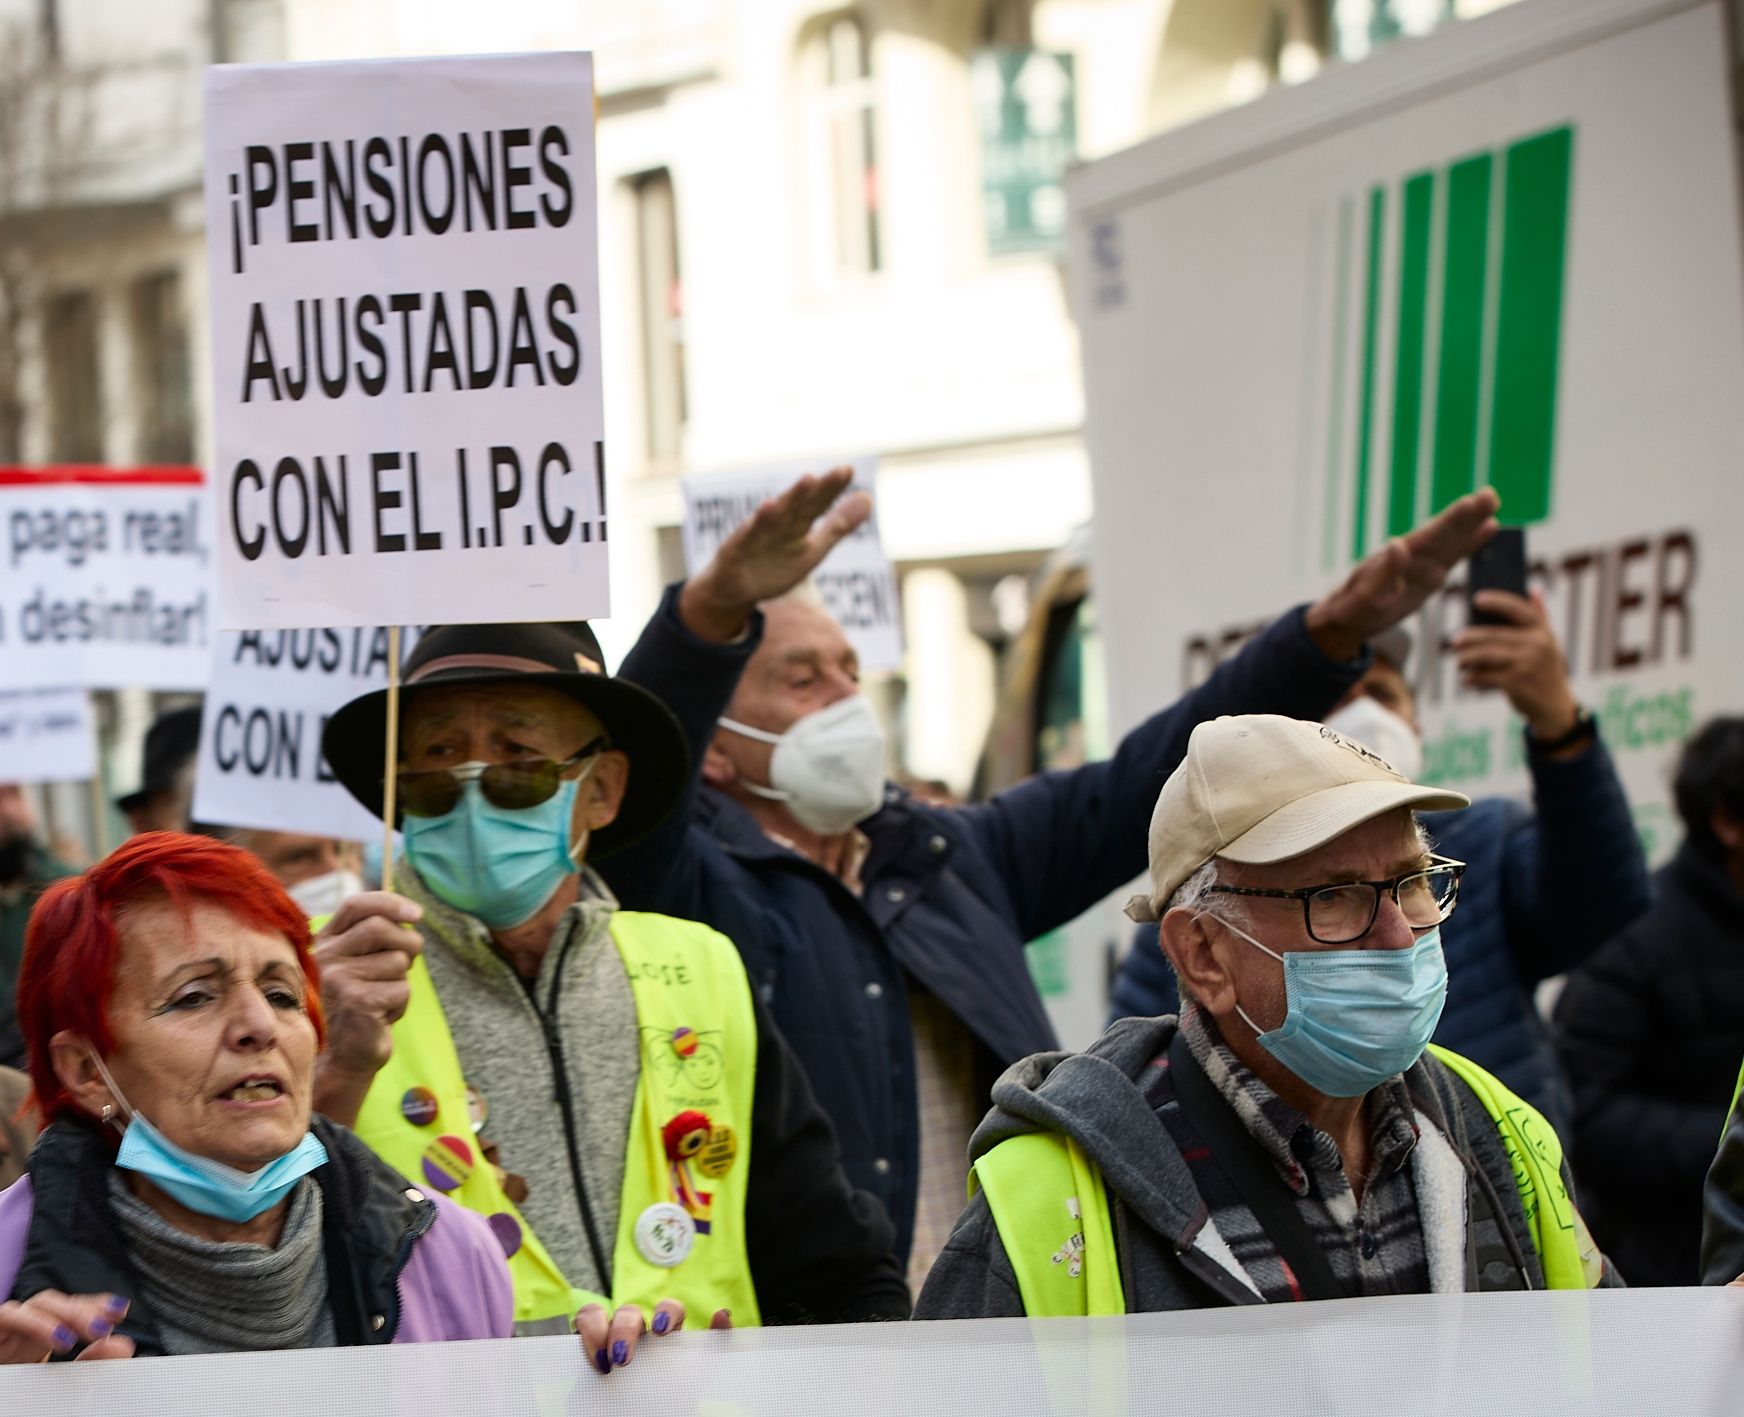 La pensión media de jubilación subirá a 1.350 euros en 2023 tras la revalorización con el IPC